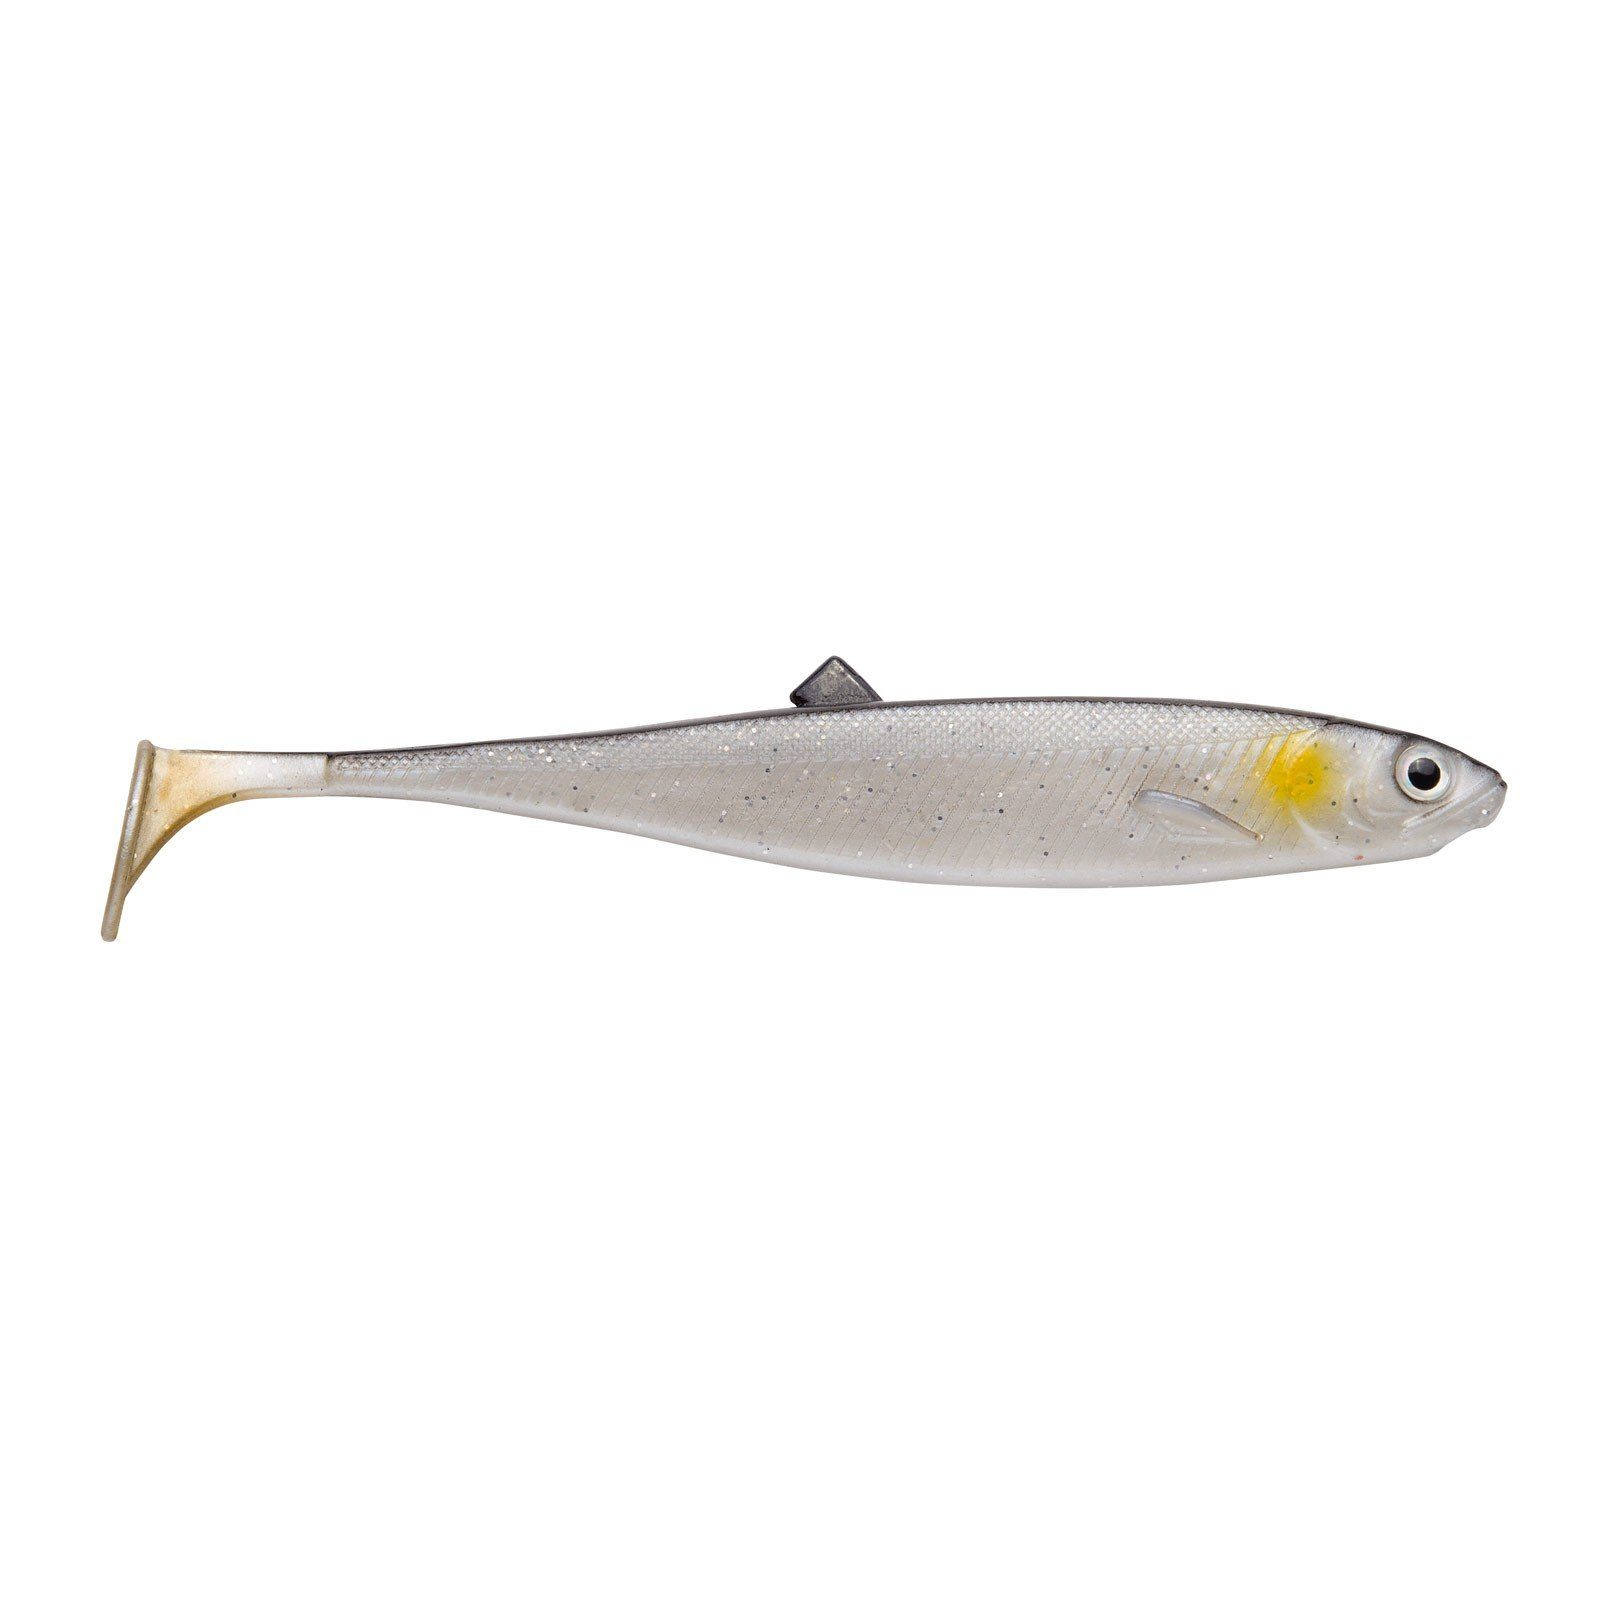 The Jackson Bleak Jackson Baitfish Kunstköder, 10cm Fishing Silver Gummifisch